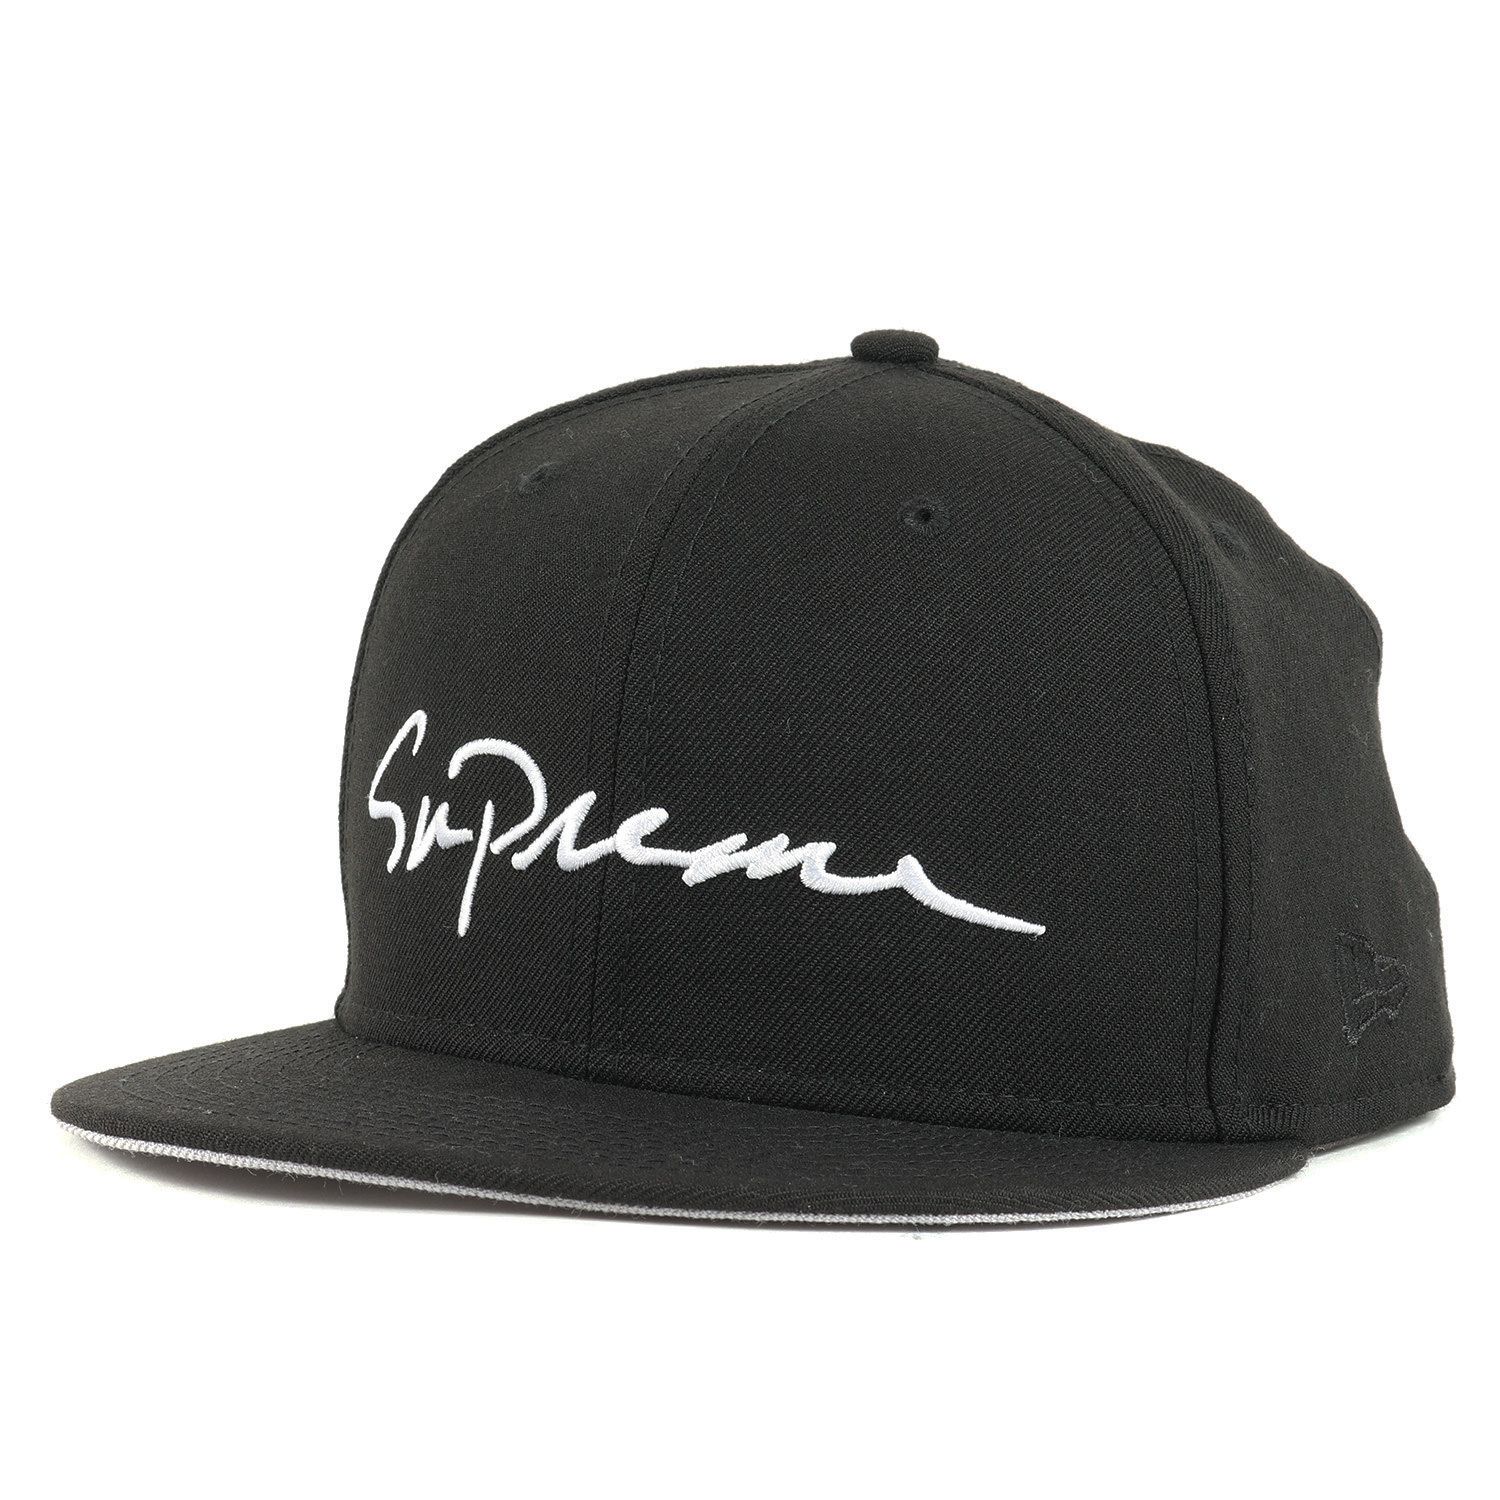 Supreme シュプリーム キャップ NEW ERA ニューエラ クラシック スクリプトロゴ ベースボールキャップ Classic Script Cap 18AW ブラック 黒 7 1/2(59.6cm) 帽子 【メンズ】